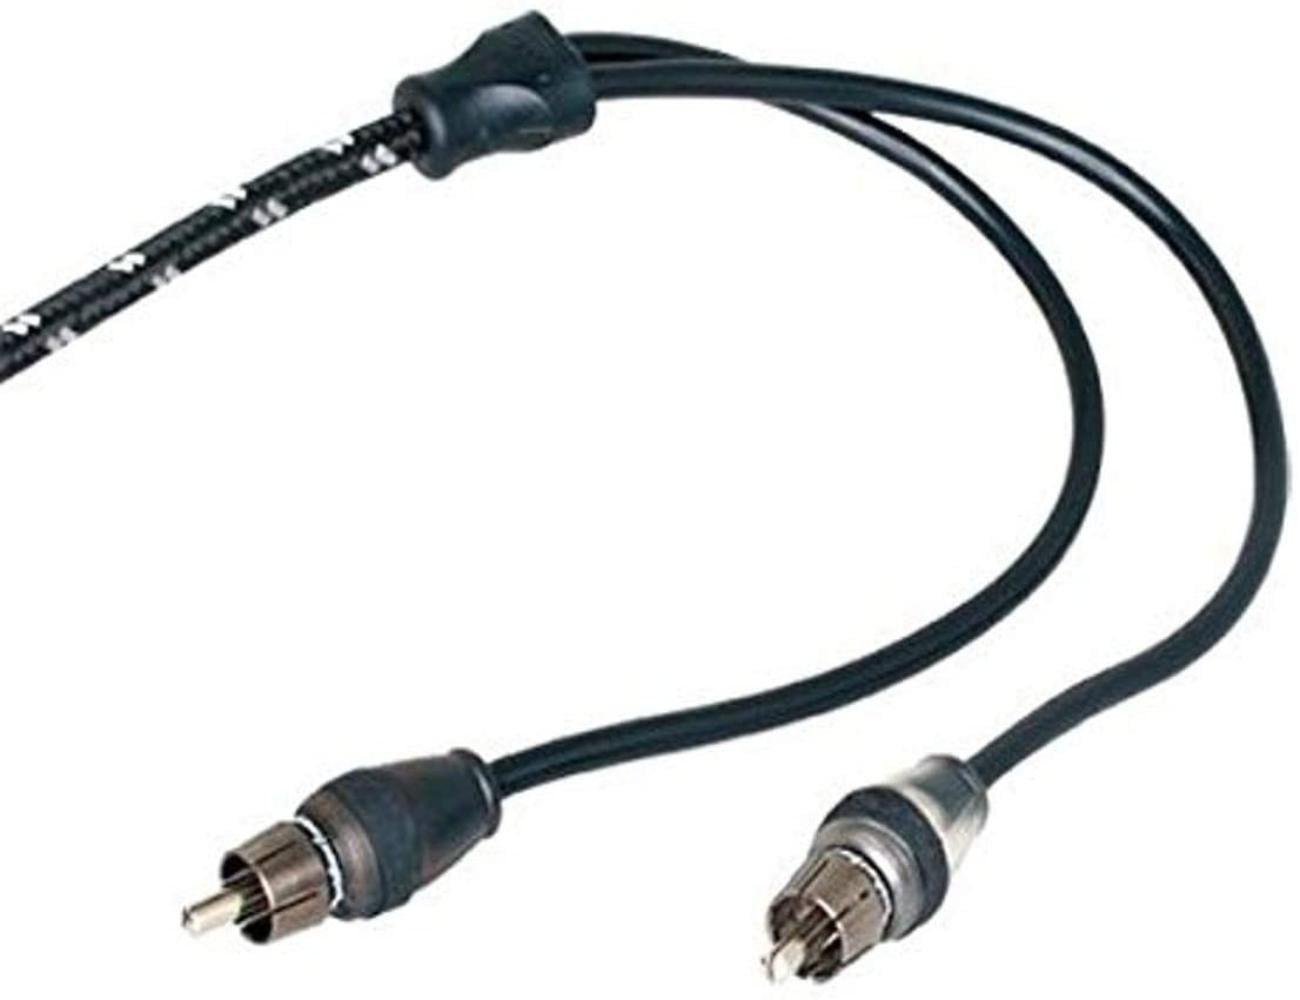 Kawasaki Mule Hood Cable Replaces OEM 54010-0600 54010-0131 & 54010-0026 